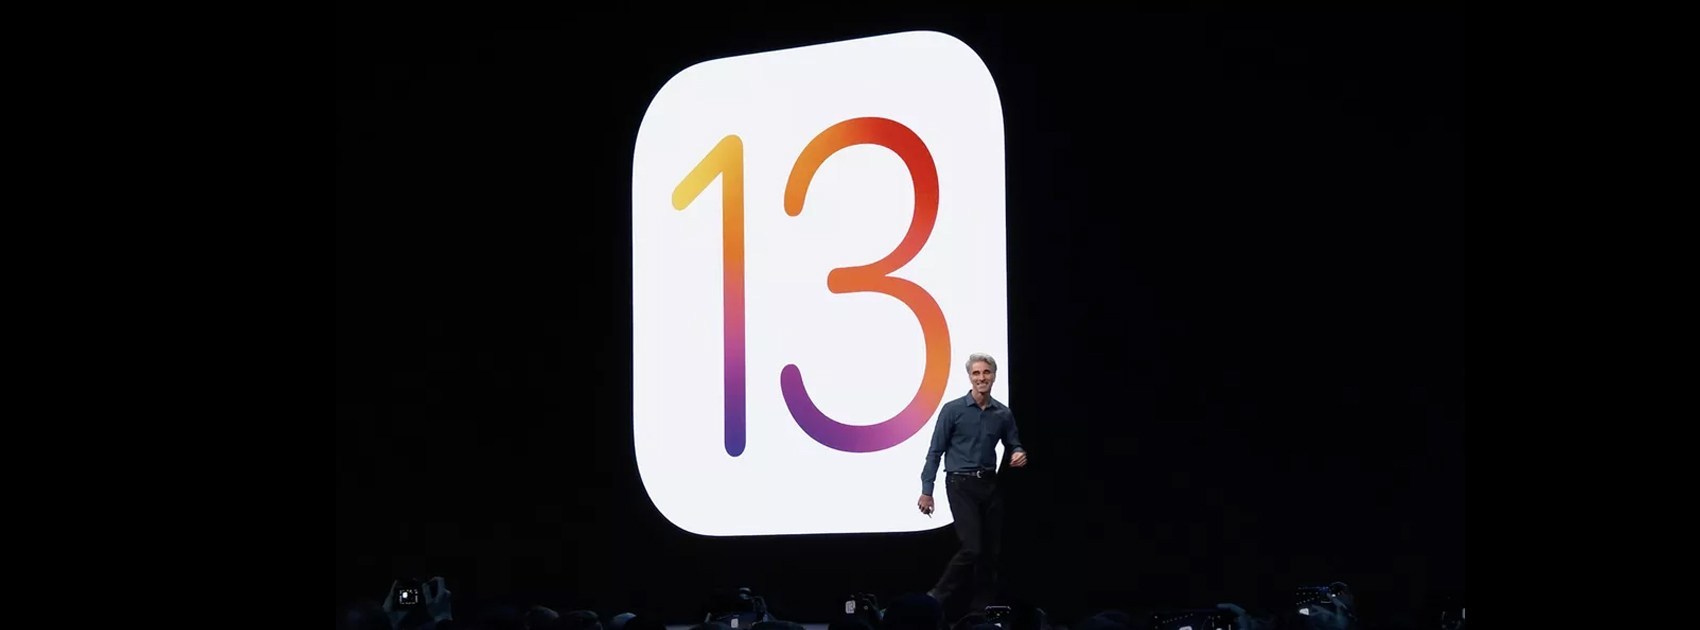 تقرير: iOS 13 سينبه المستخدمين قبل حذف التطبيقات التى يملك اشتراك بها